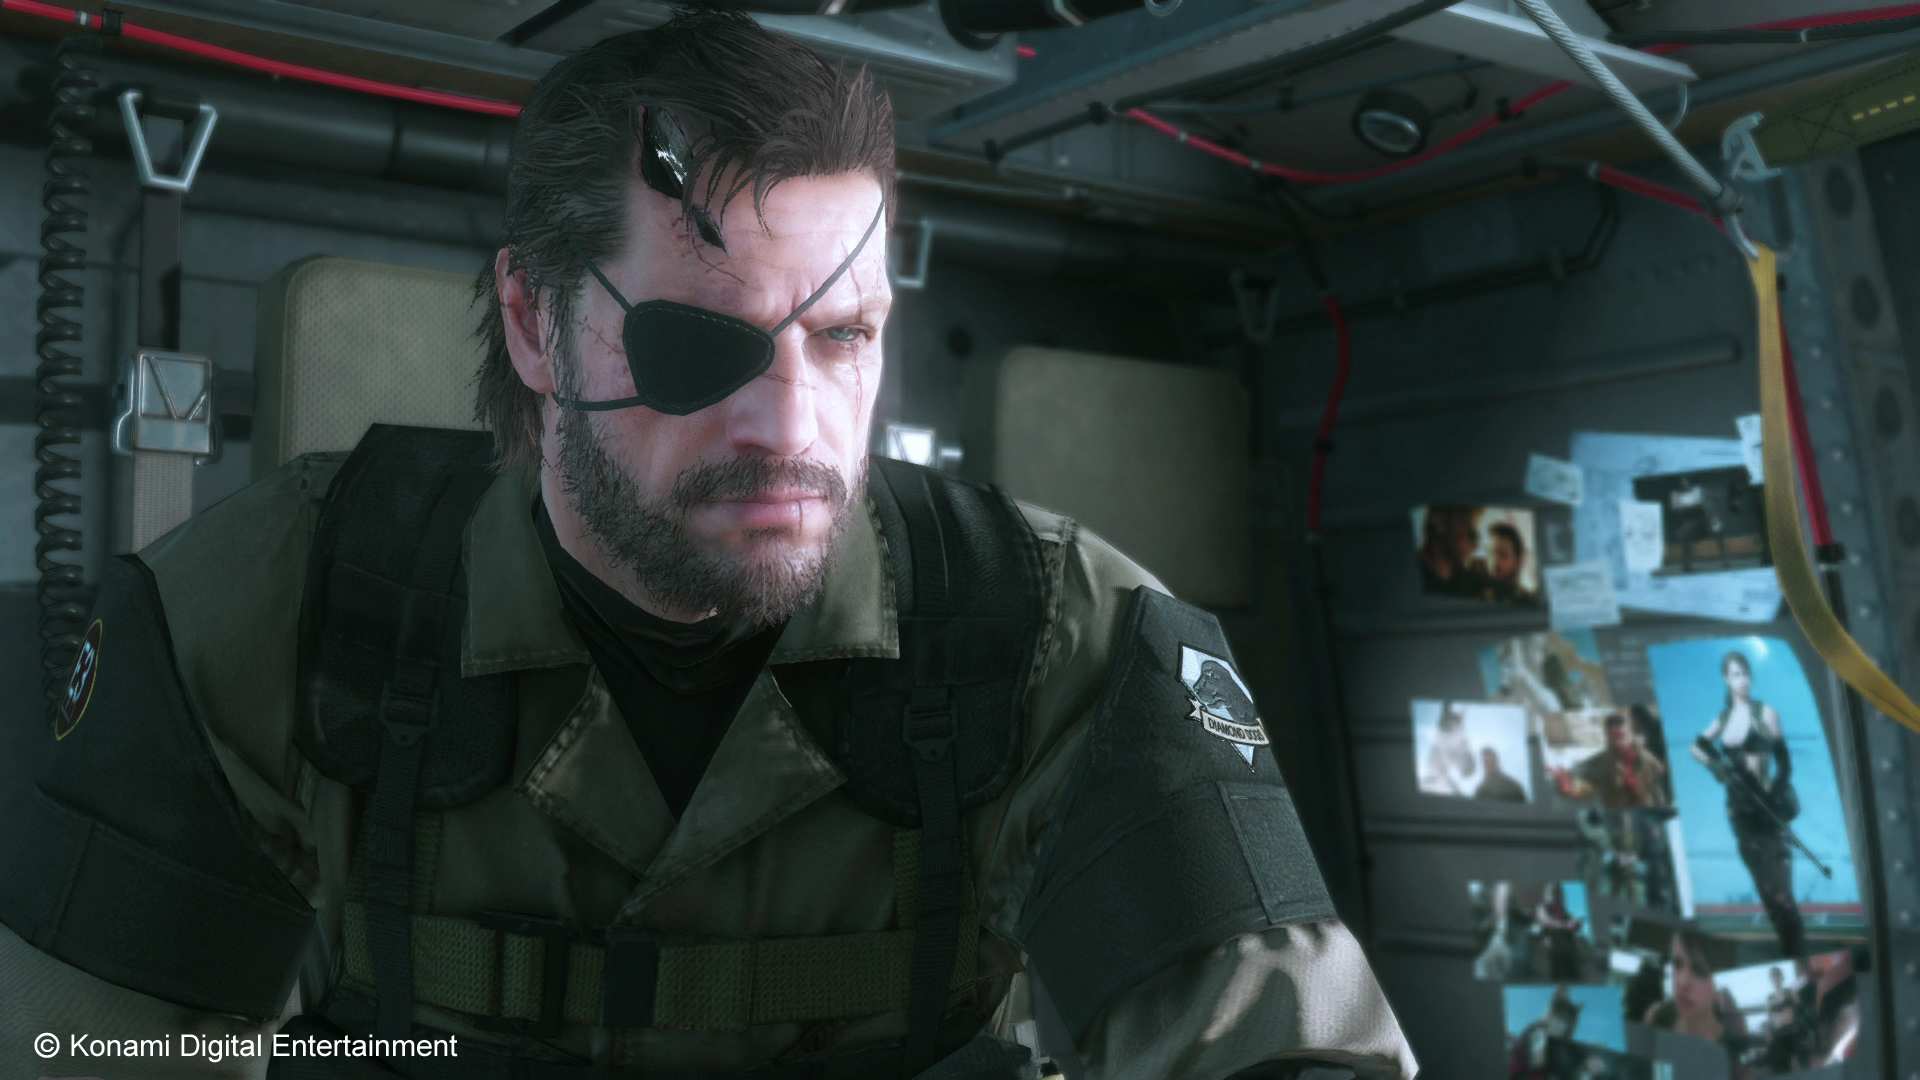 Mgs 5 the phantom pain. Metal Gear Solid 5: the Phantom Pain. Солид Снейк 5. Биг босс МГС 5.